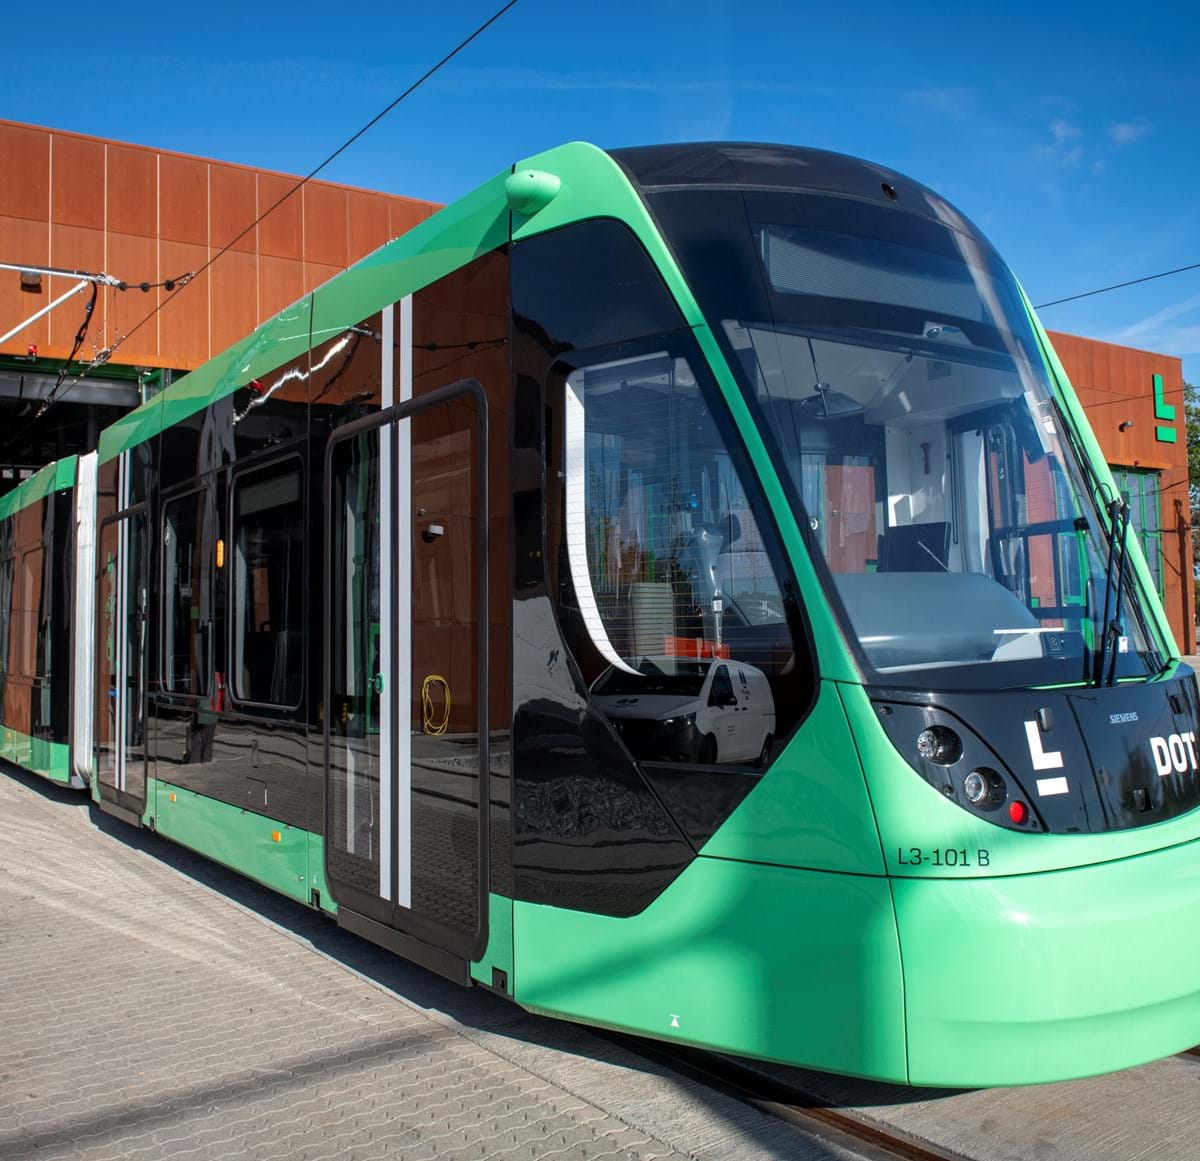 The first light rail vehicle for Copenhagen's new tram line